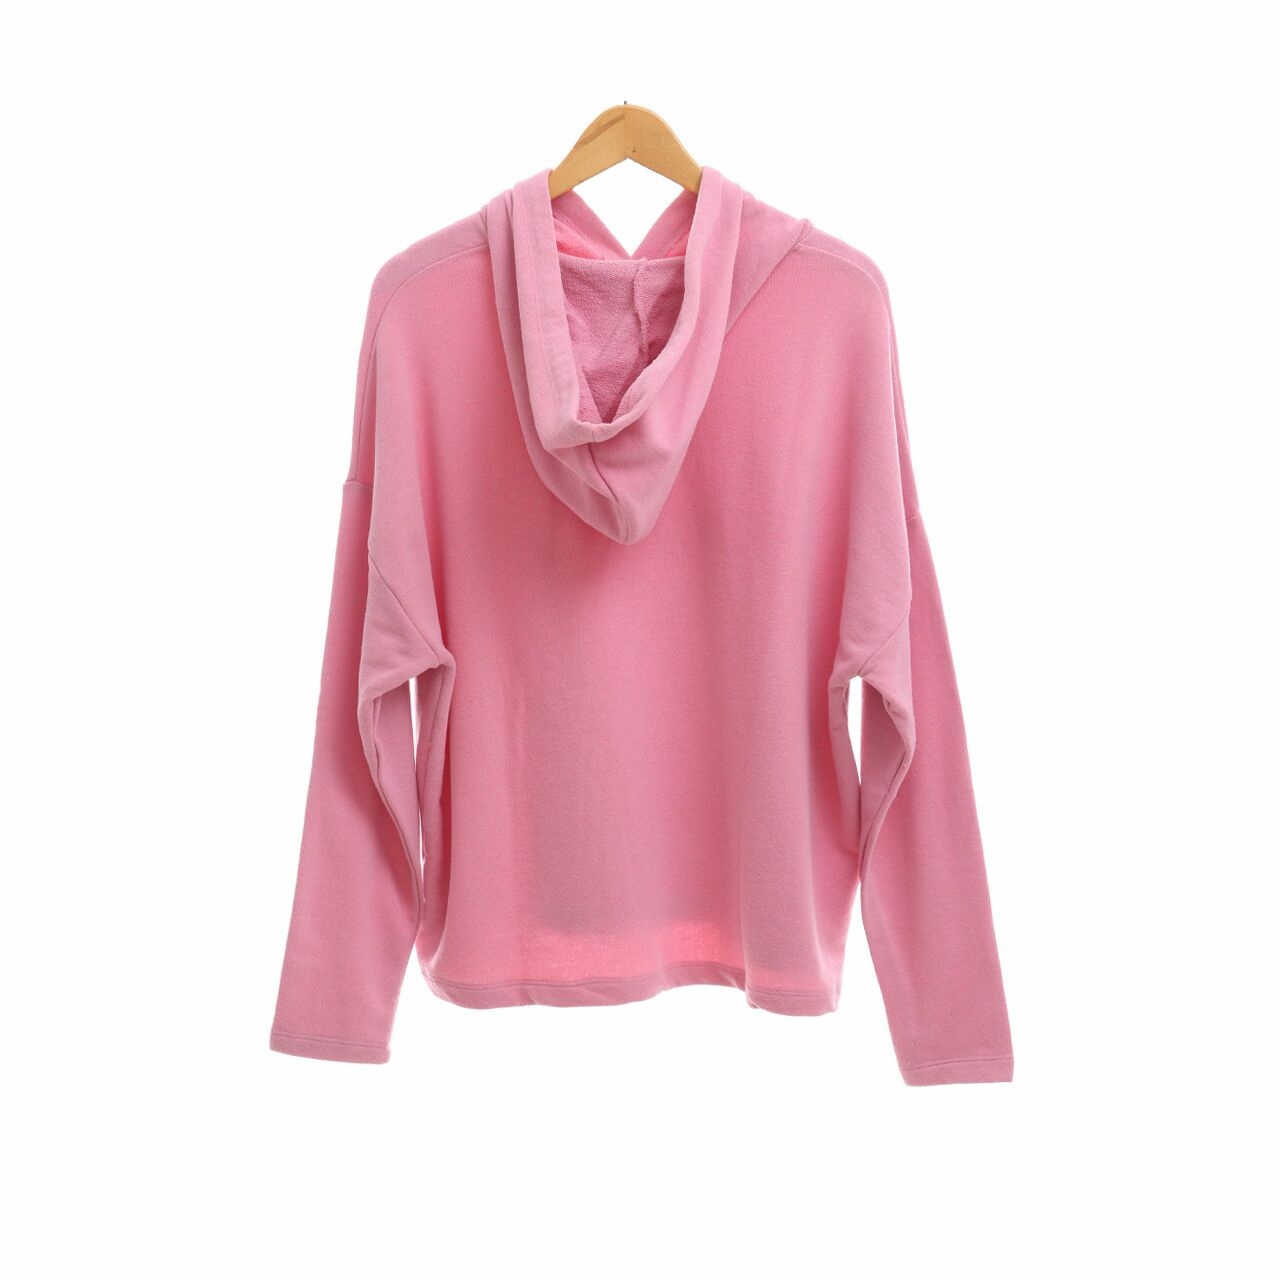 Pull & Bear Pink Hoodie Sweater